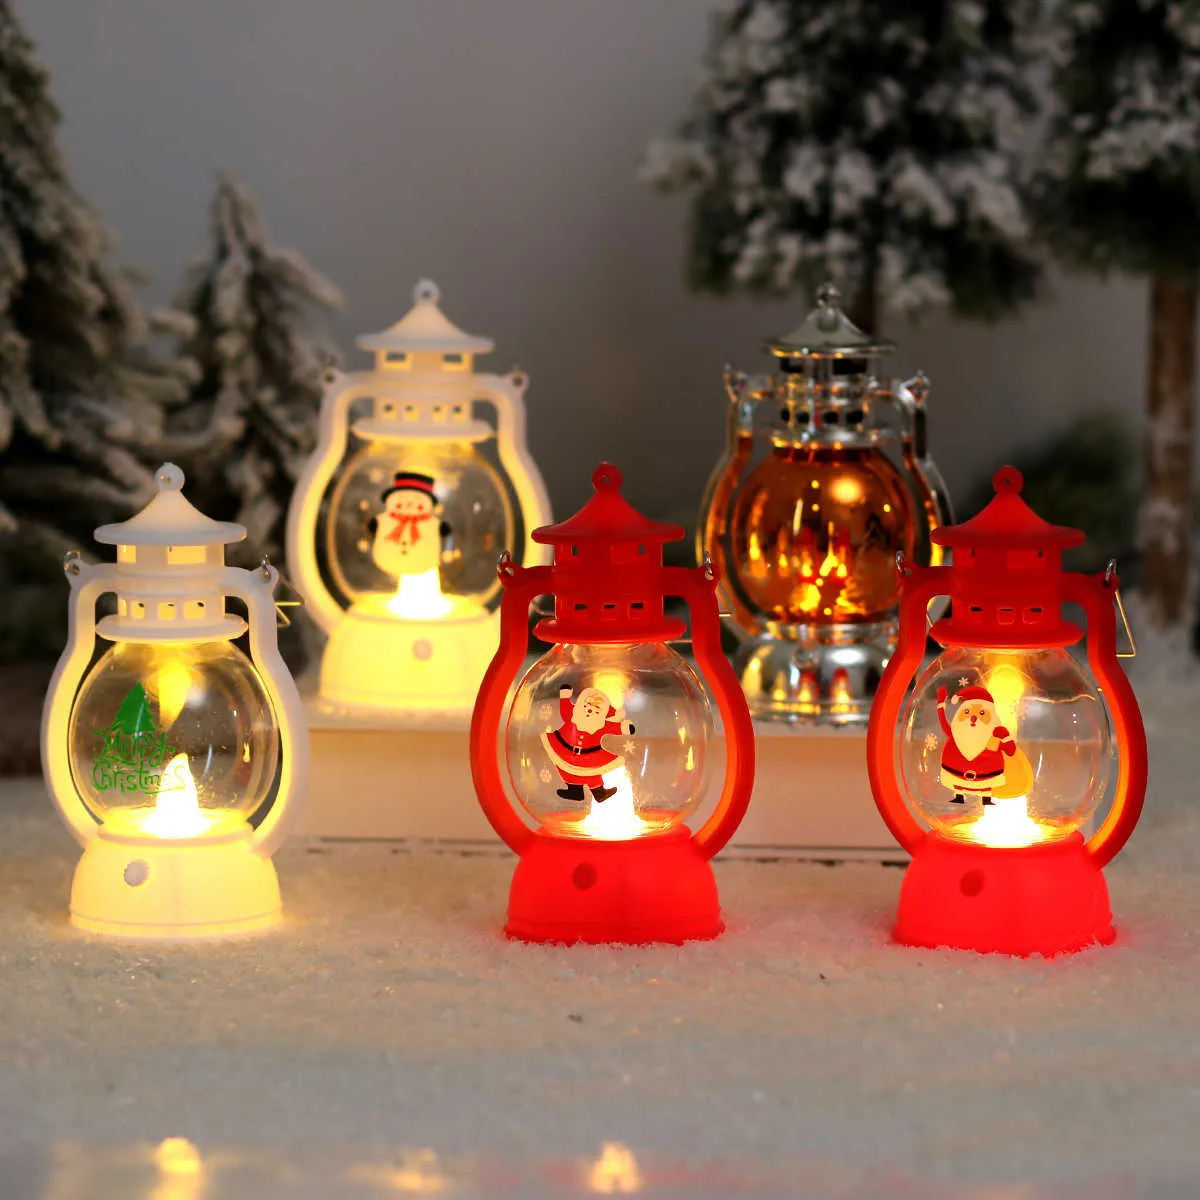 Lumières LED multifonctions, lanterne de noël, bougies chauffe-plat, décoration de joyeux noël pour la maison, ornements d'arbre de noël, lampe d'élan du père noël, nouvel an